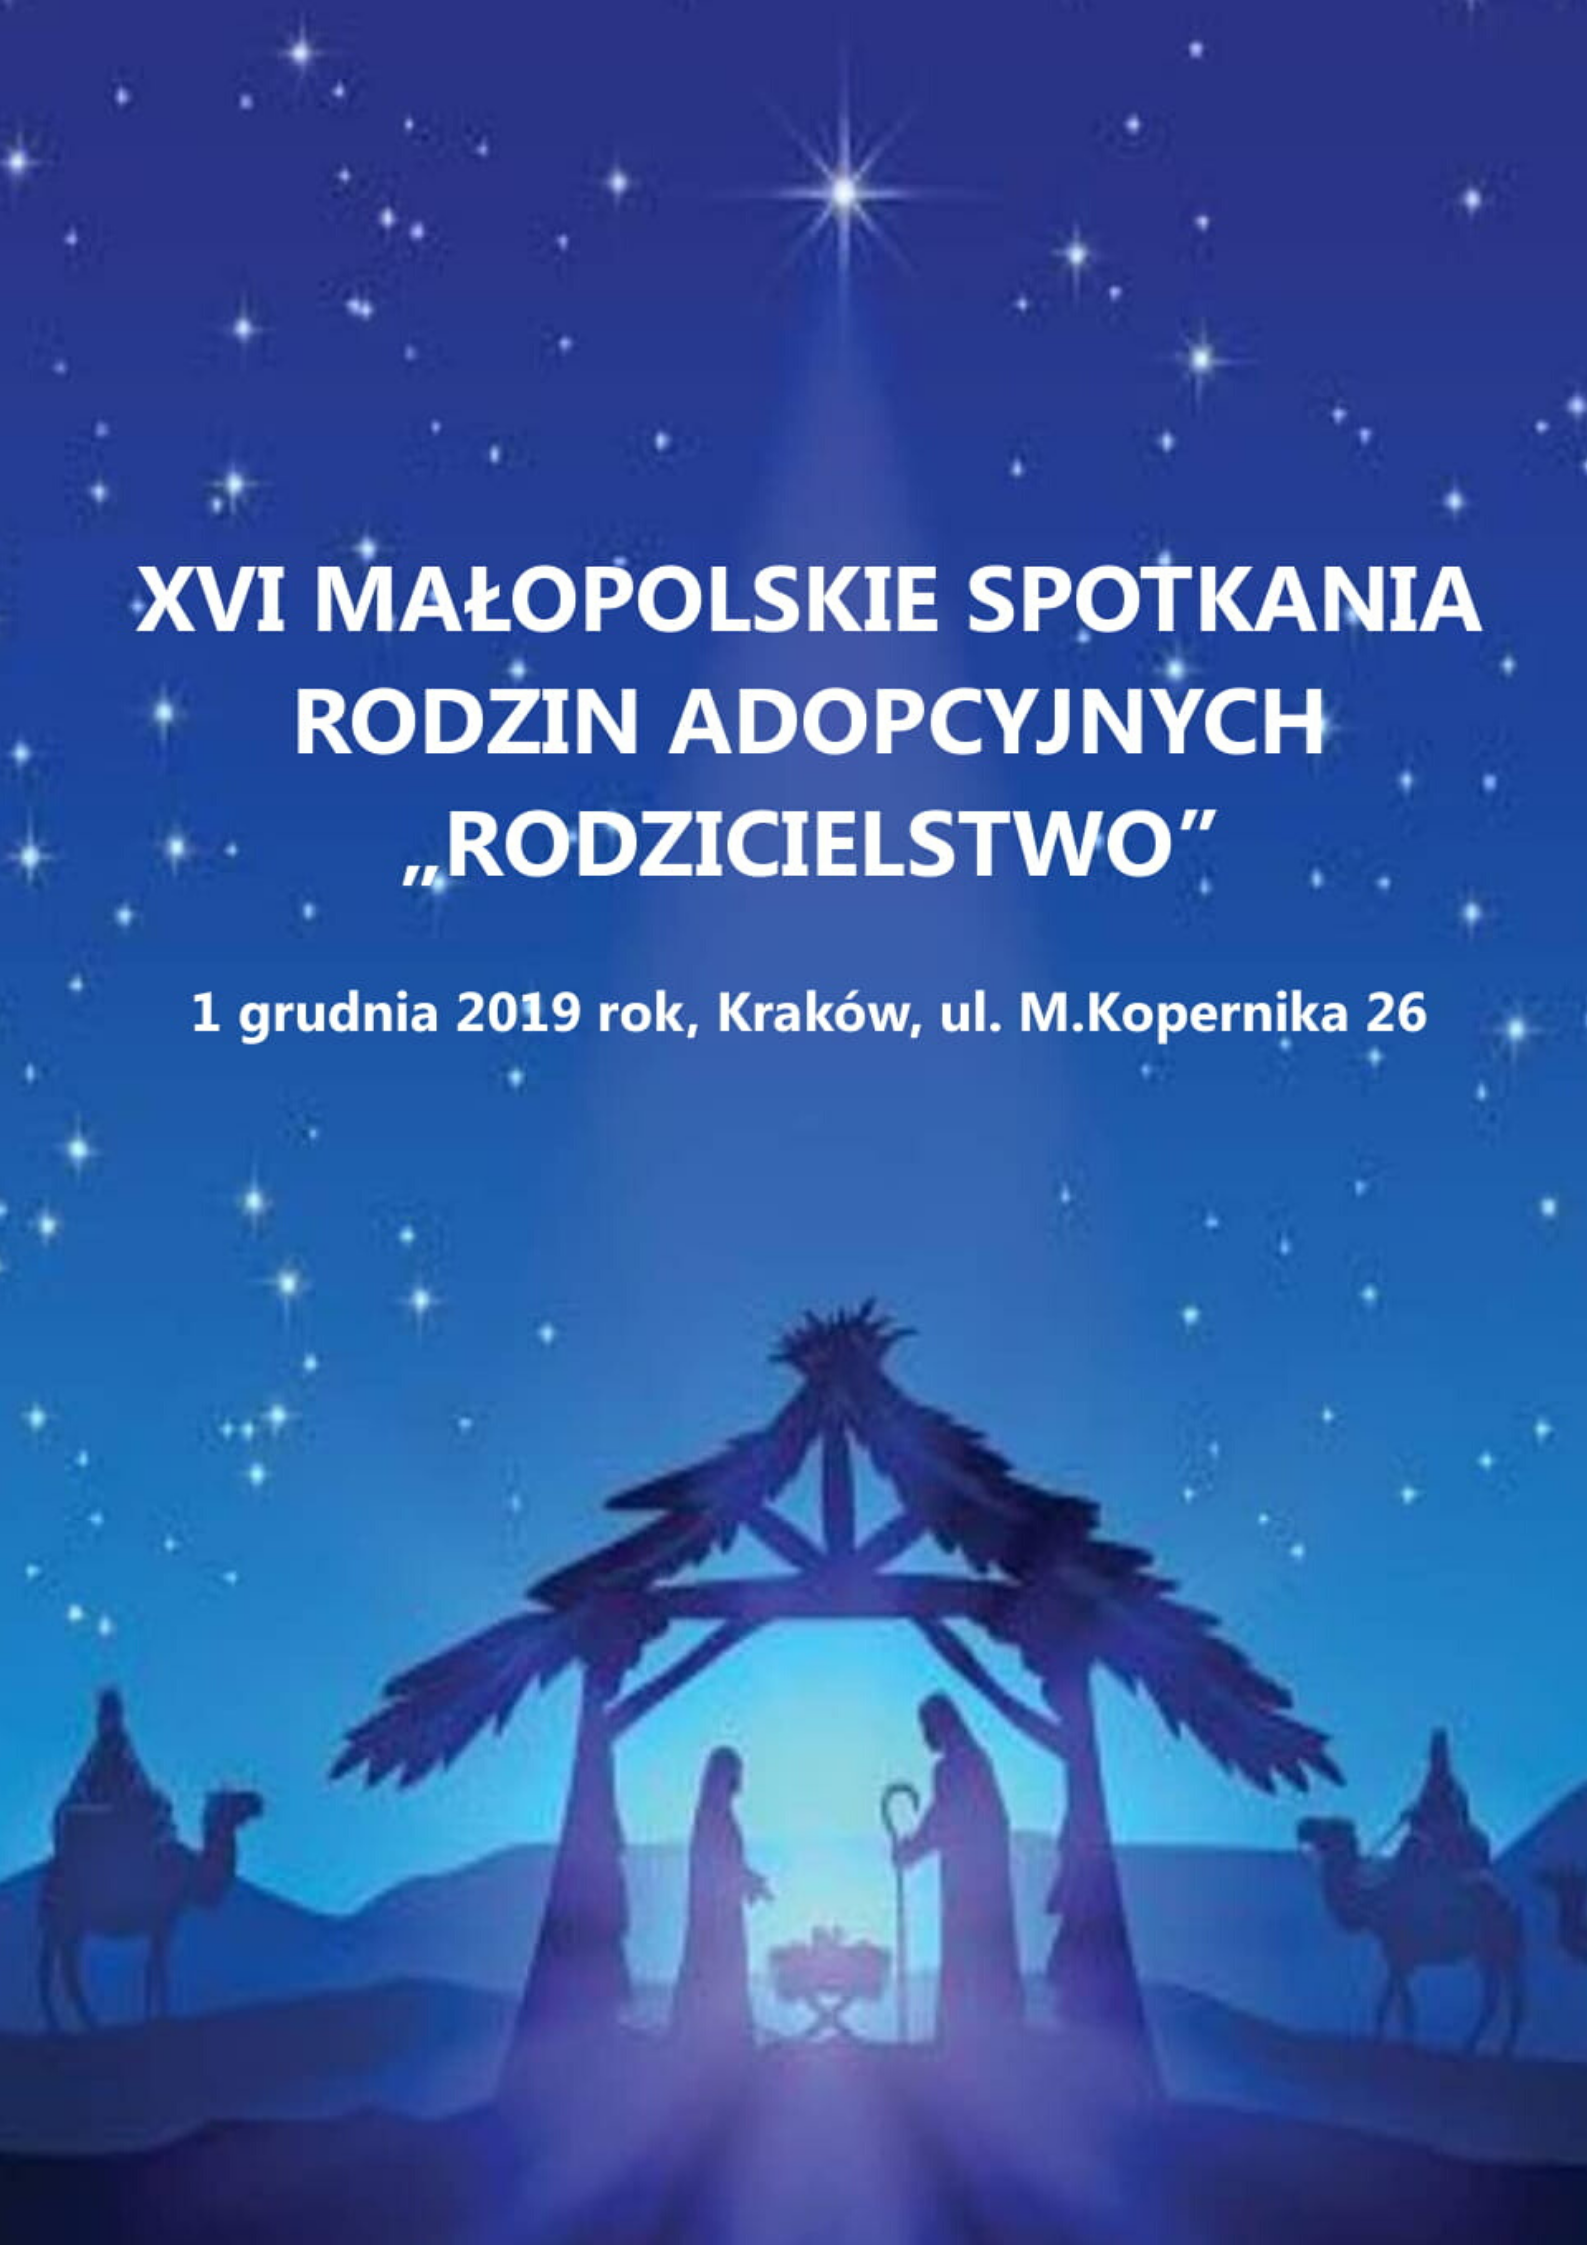 XVI Małopolskie Spotkanie Rodzin Adopcyjnych